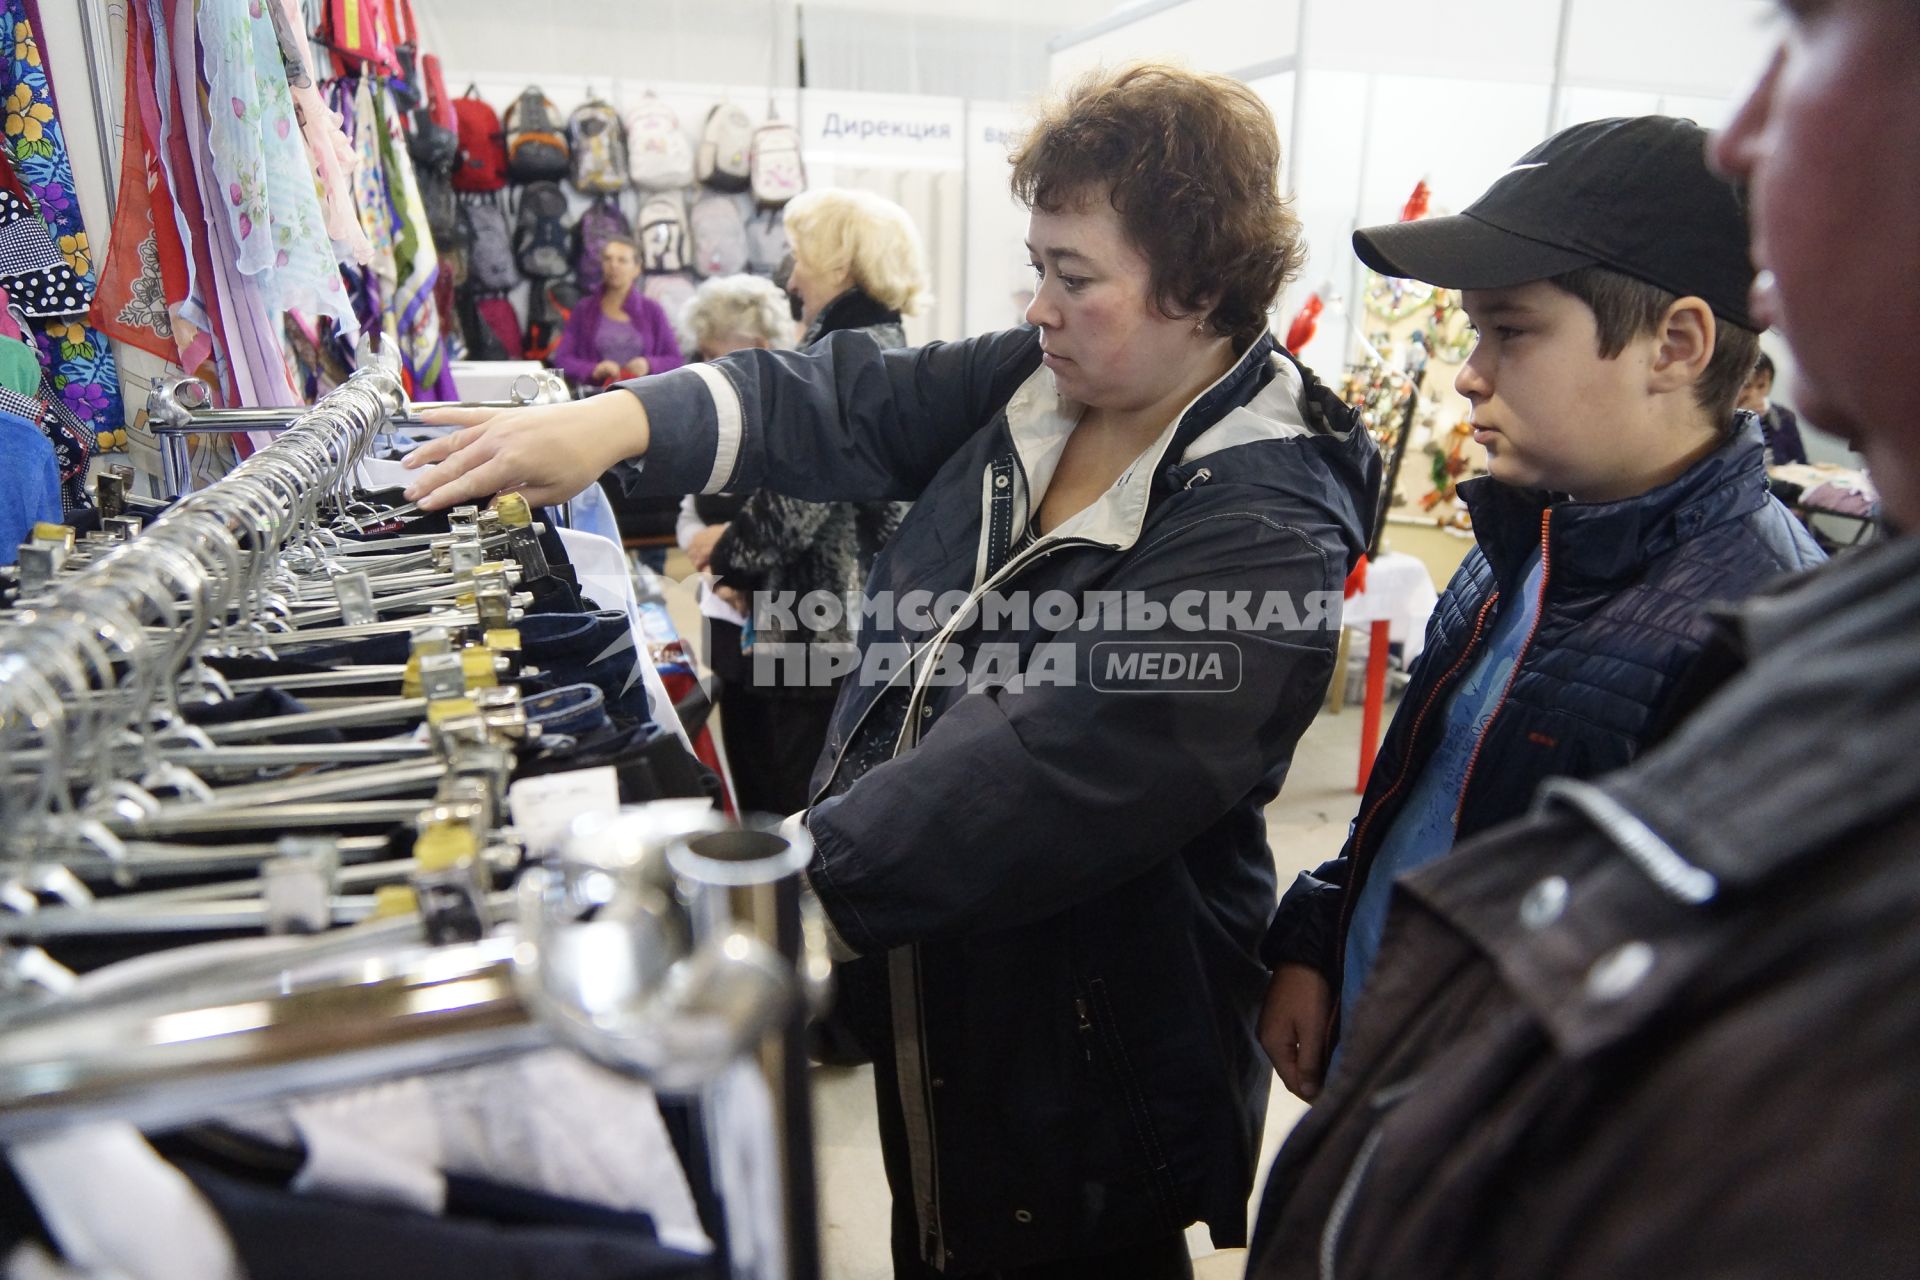 Екатеринбург. Покупатели выбирают одежду на школьном базаре.